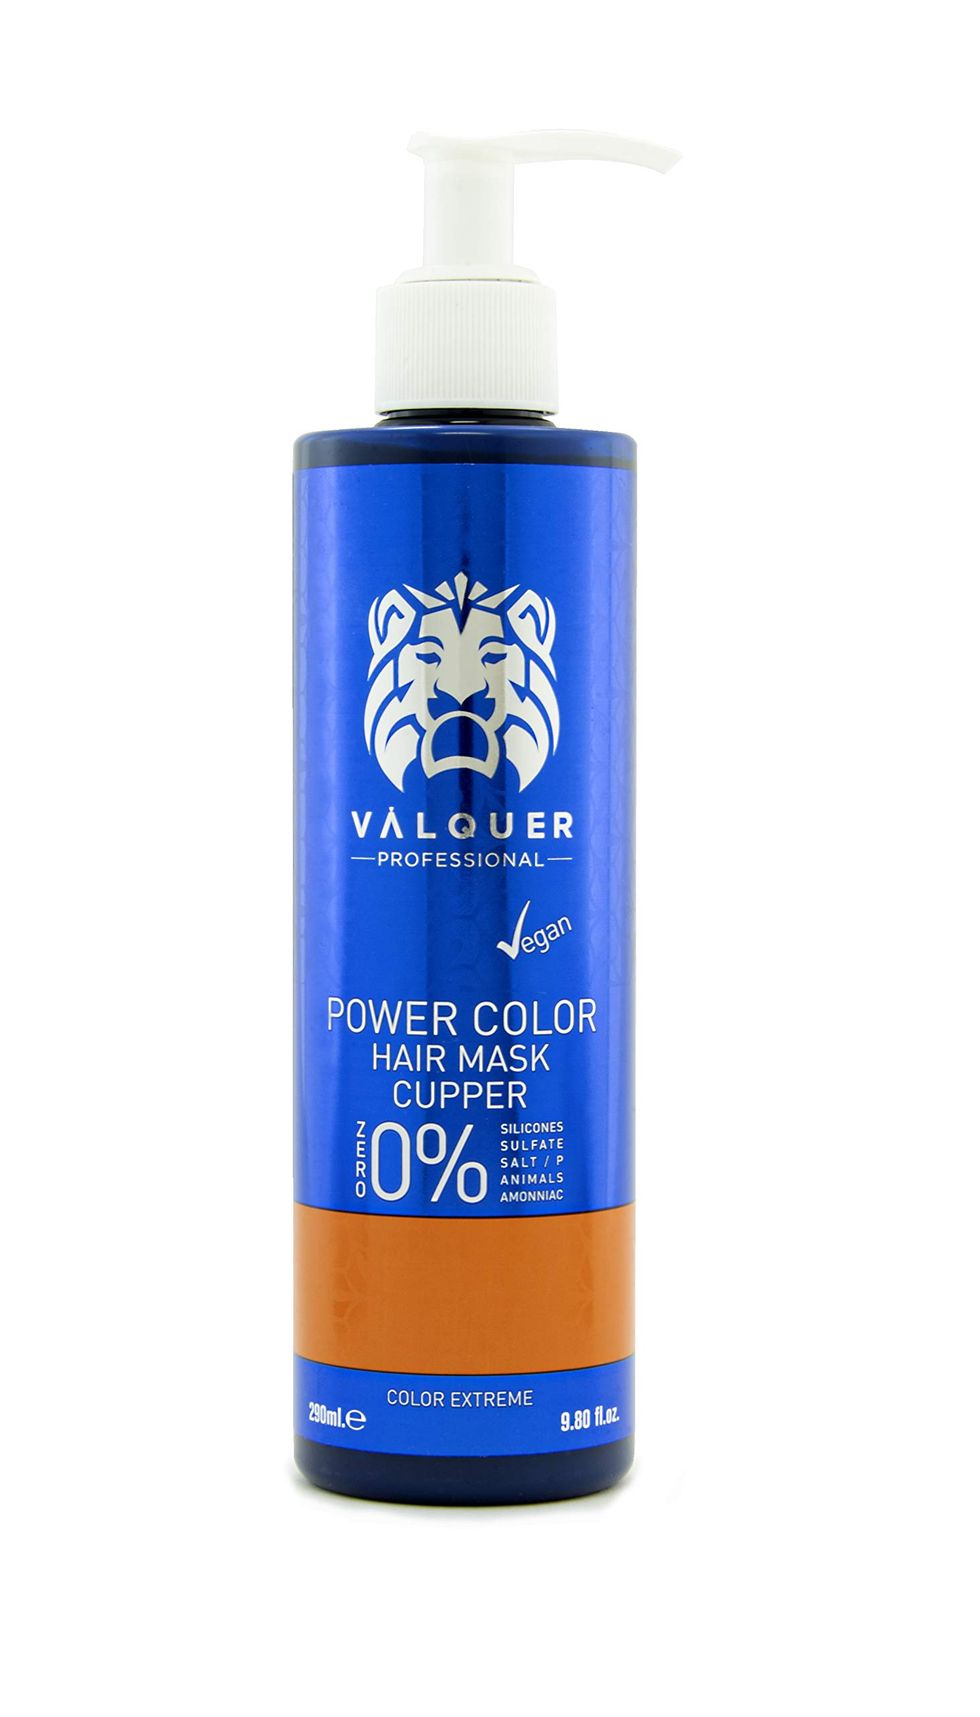 Valquer Profesional - Válquer Professional Mascarilla Power Color cabellos teñidos. Vegano y sin sulfatos (Cobre). Potenciador color pelo- 275 ml